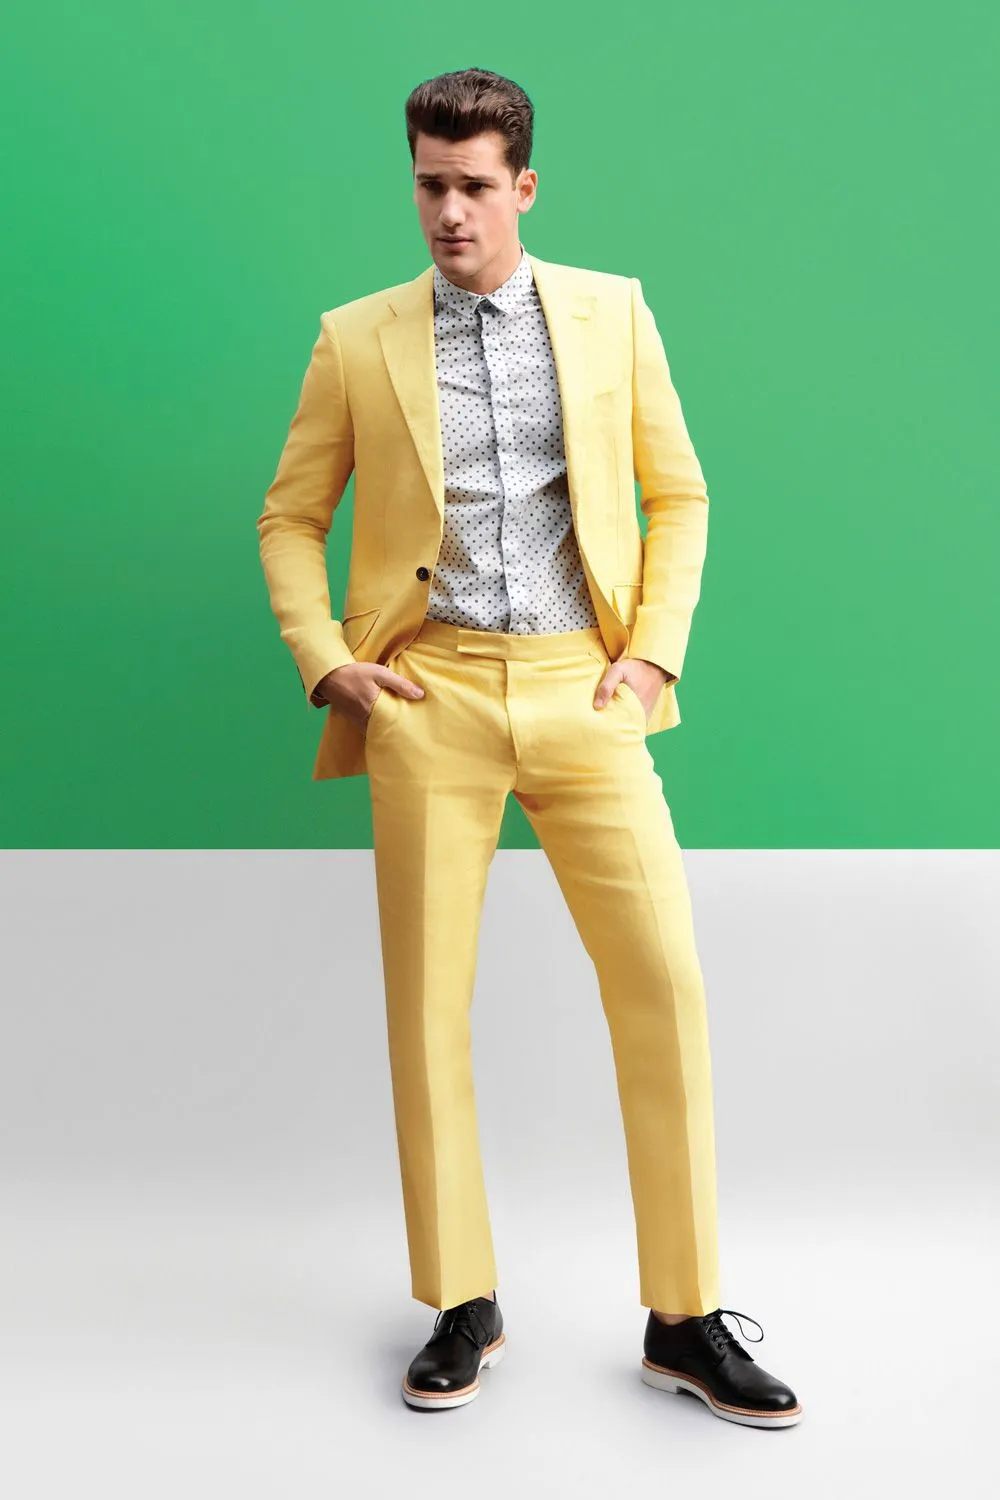 Yeni Geliş Groomsmen Notch Yaka Damat smokin sarı Erkekler Düğün / Gelinlik / Akşam Sağdıç Blazer (Ceket + Pantolon + Kravat) G174 Takımları